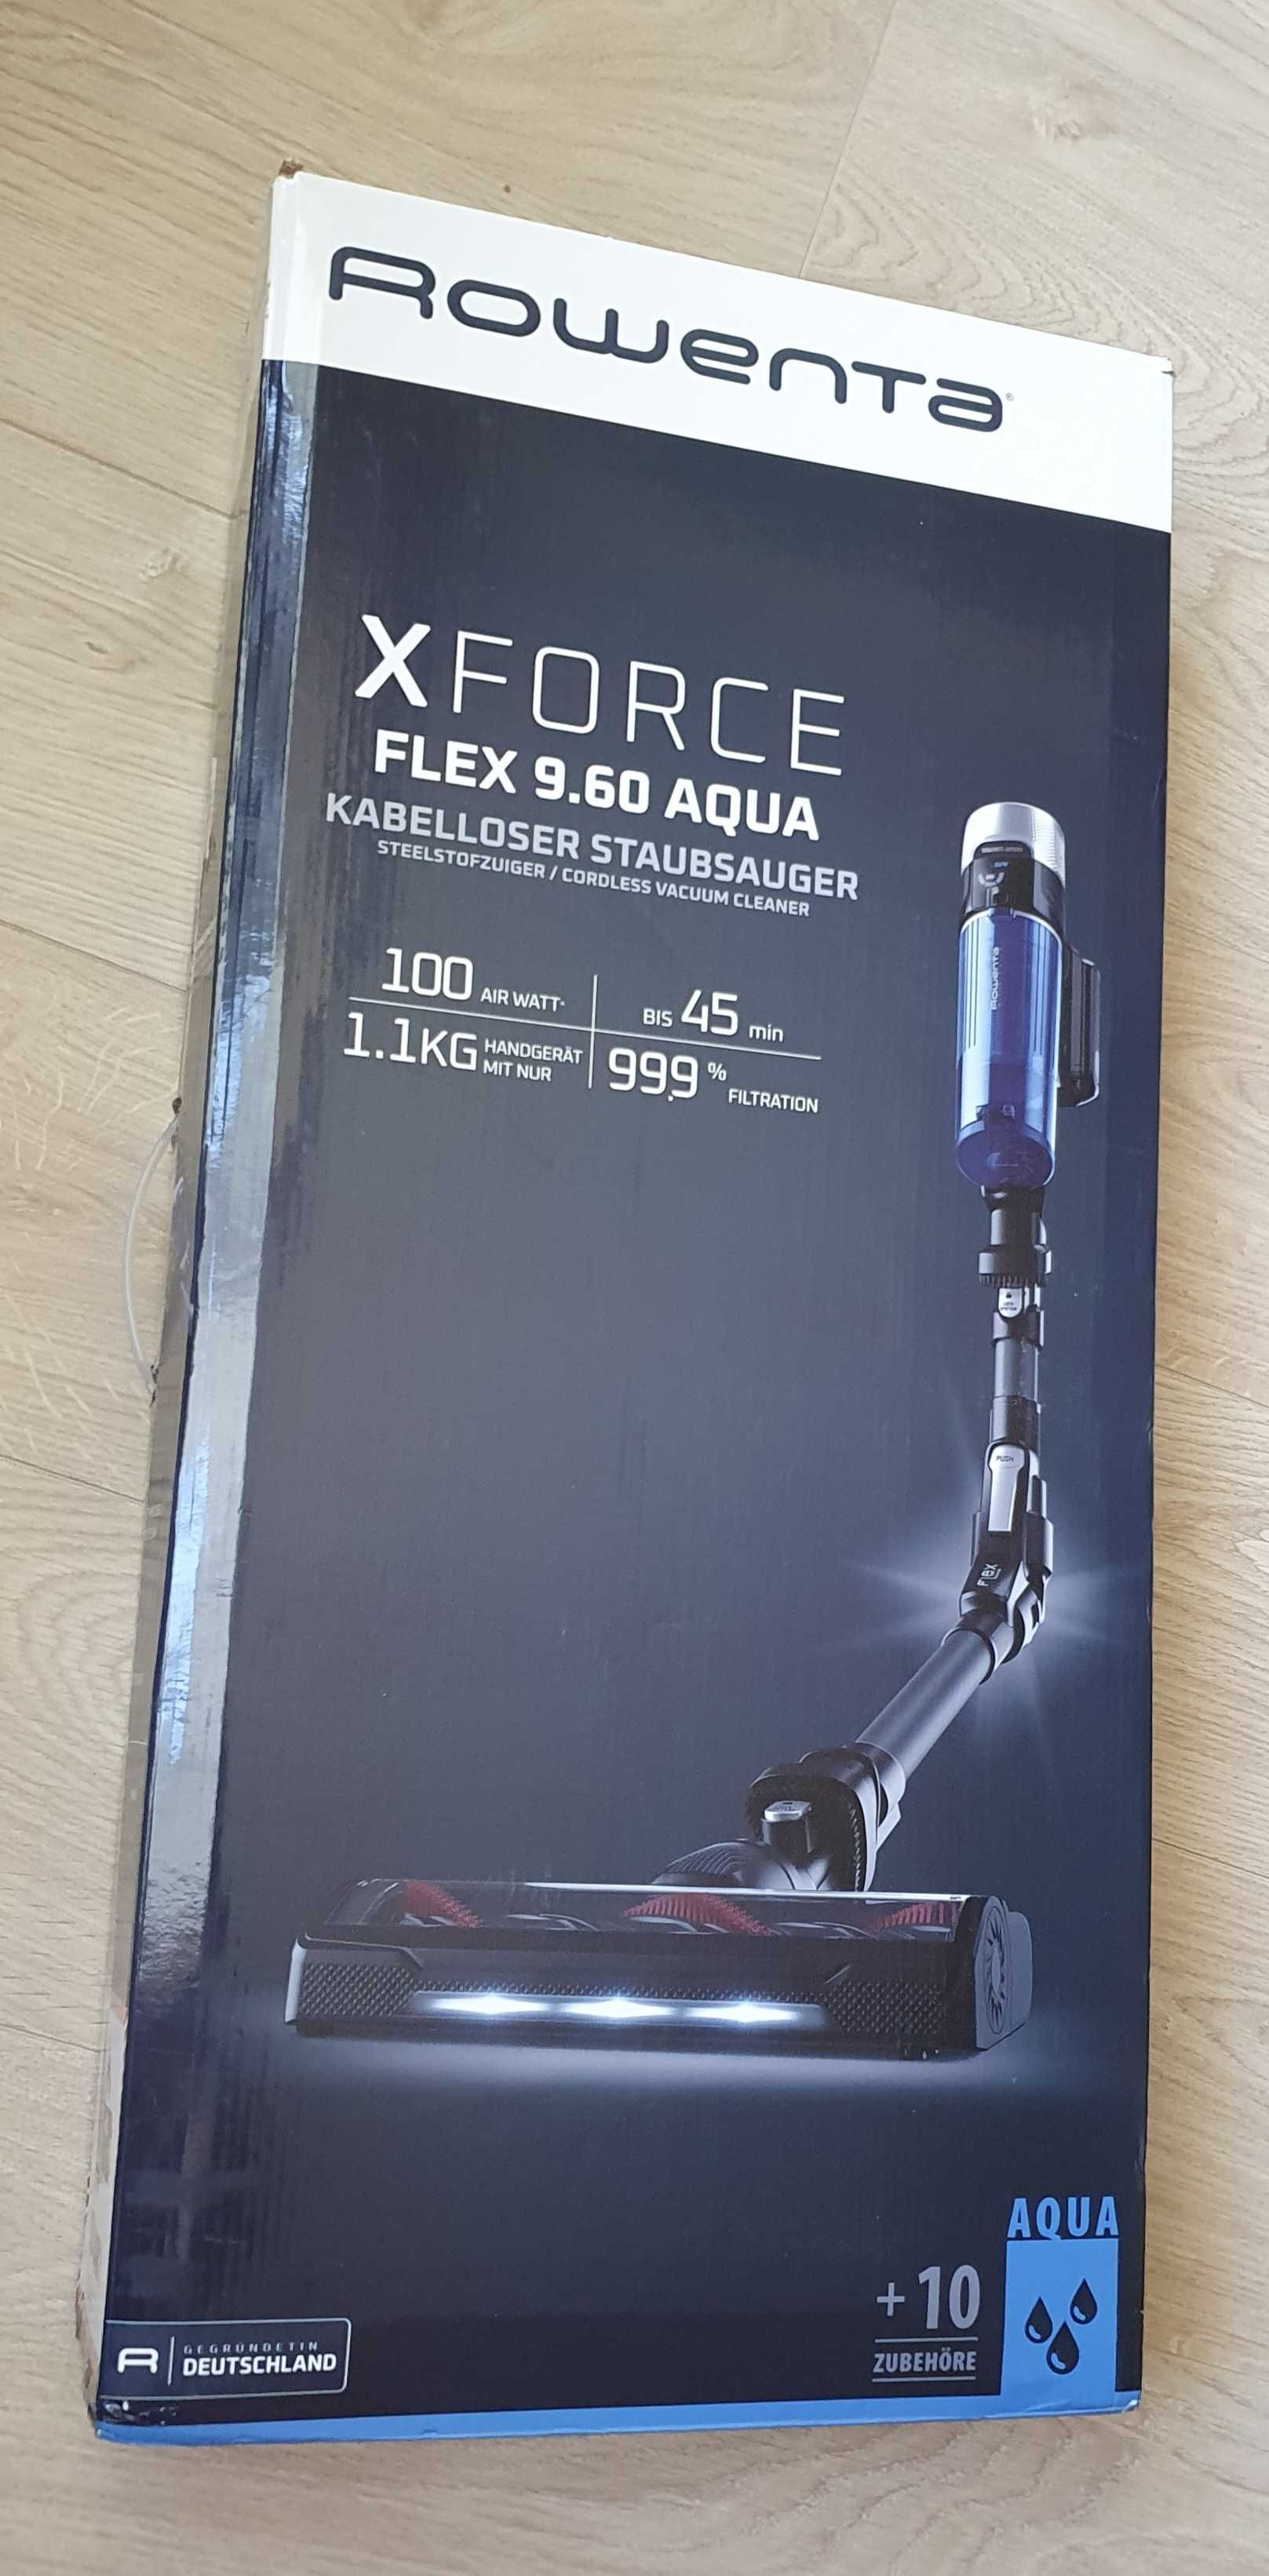 Аккумуляторный пылесос Rowenta X-Force Flex 9.60 Aqua